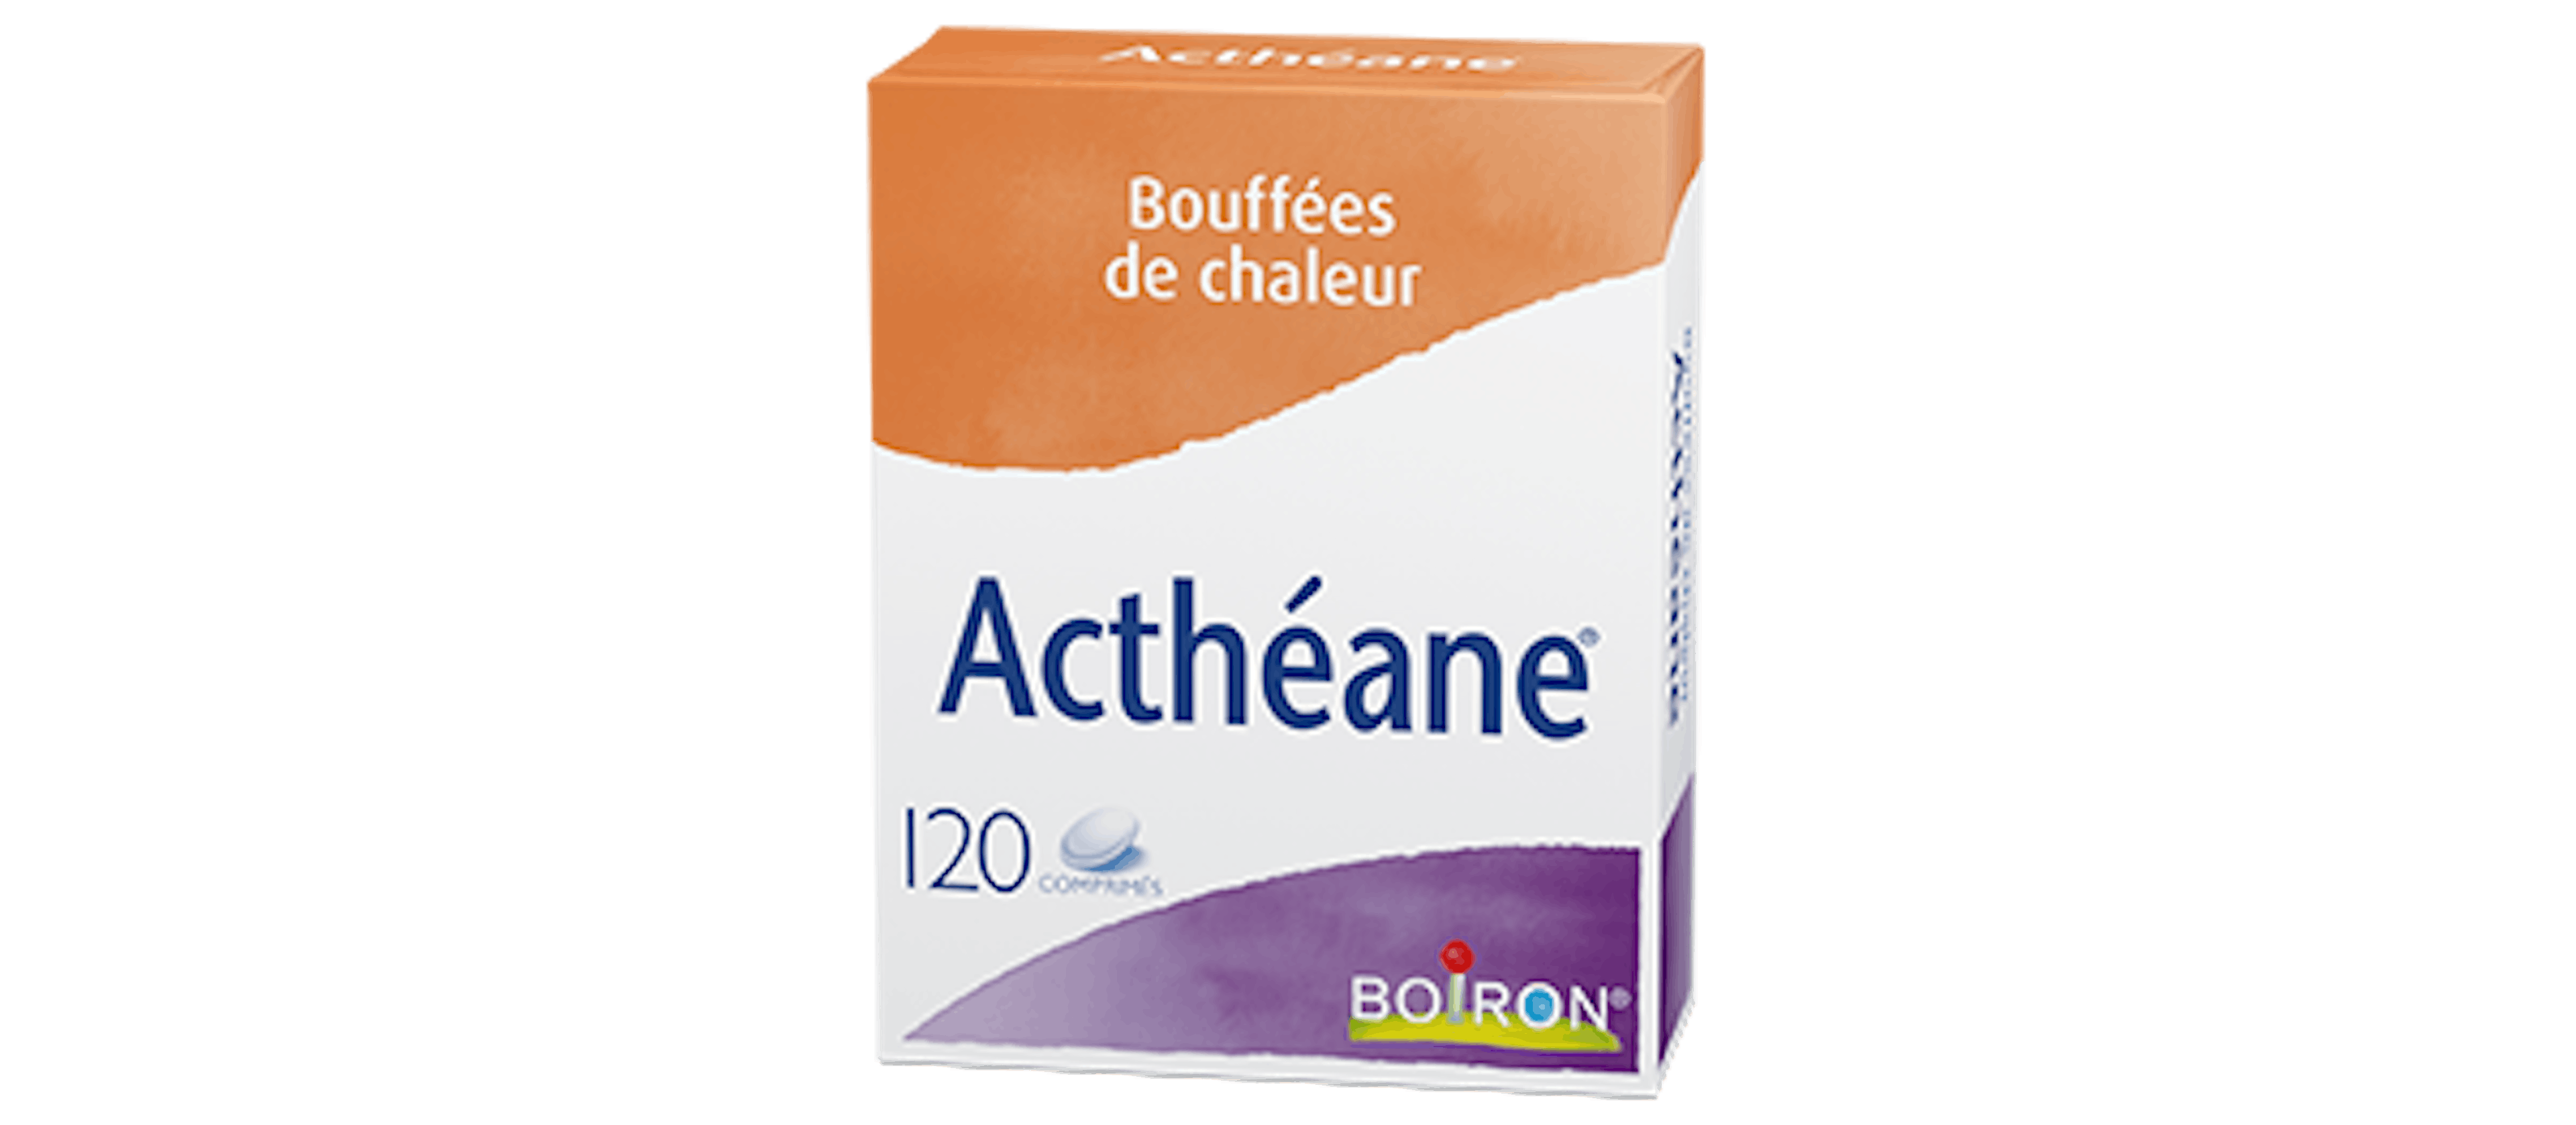 Actheane®